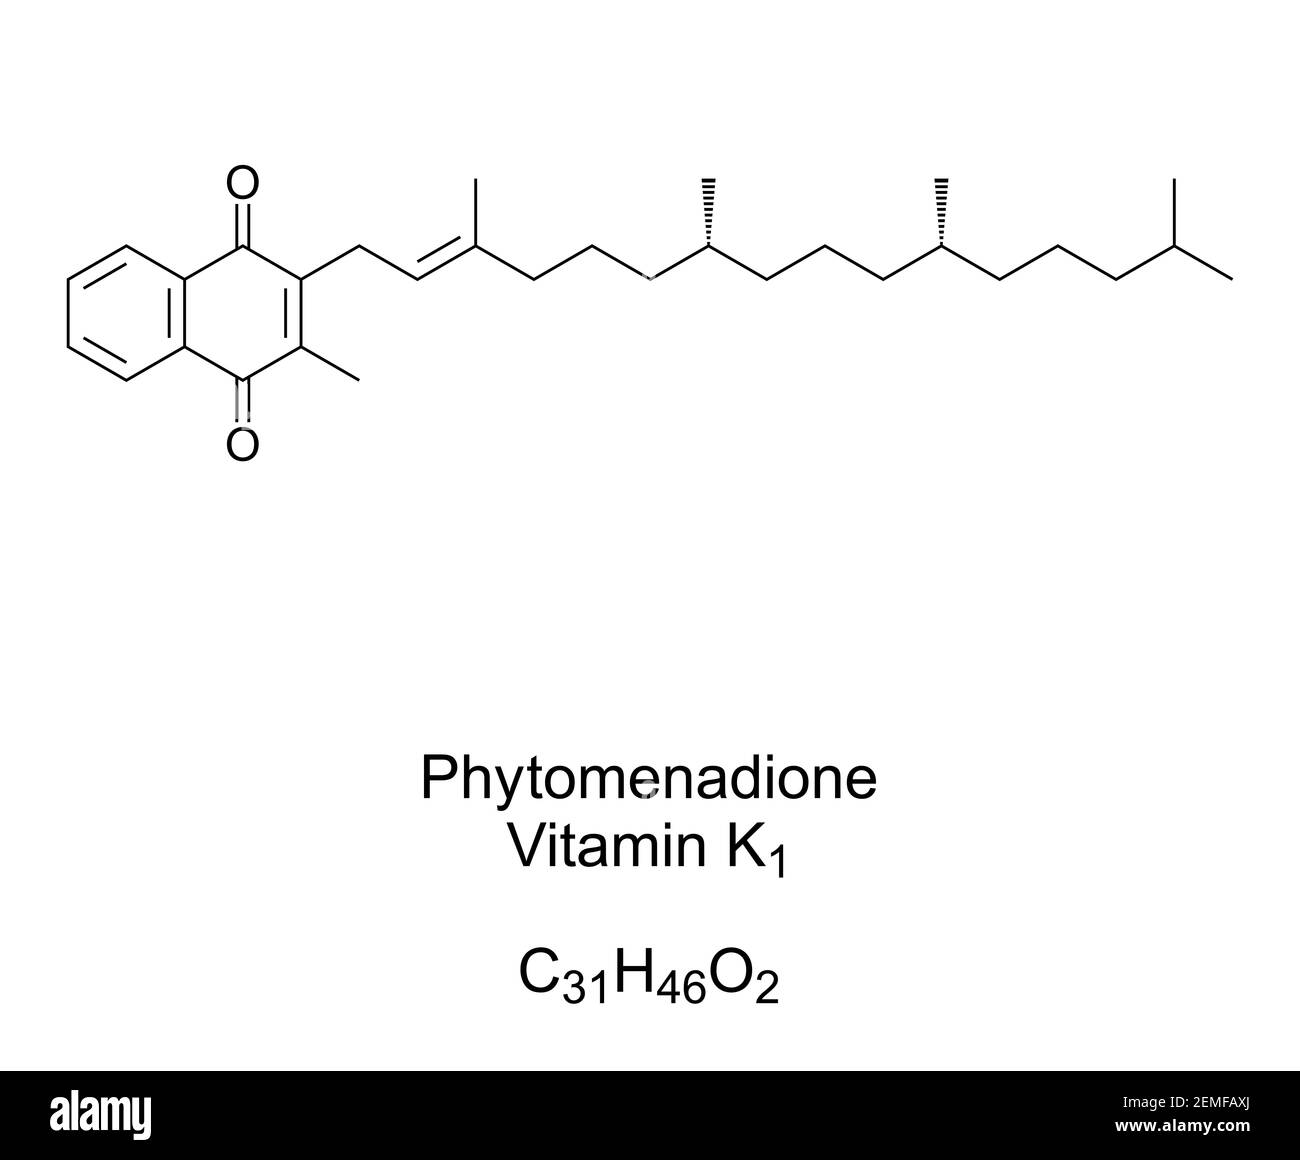 Phytomenadione, Vitamina K1, fillochinone, formula chimica e struttura scheletrica. Anche il fitonadione, presente negli alimenti e utilizzato come integratore alimentare. Foto Stock